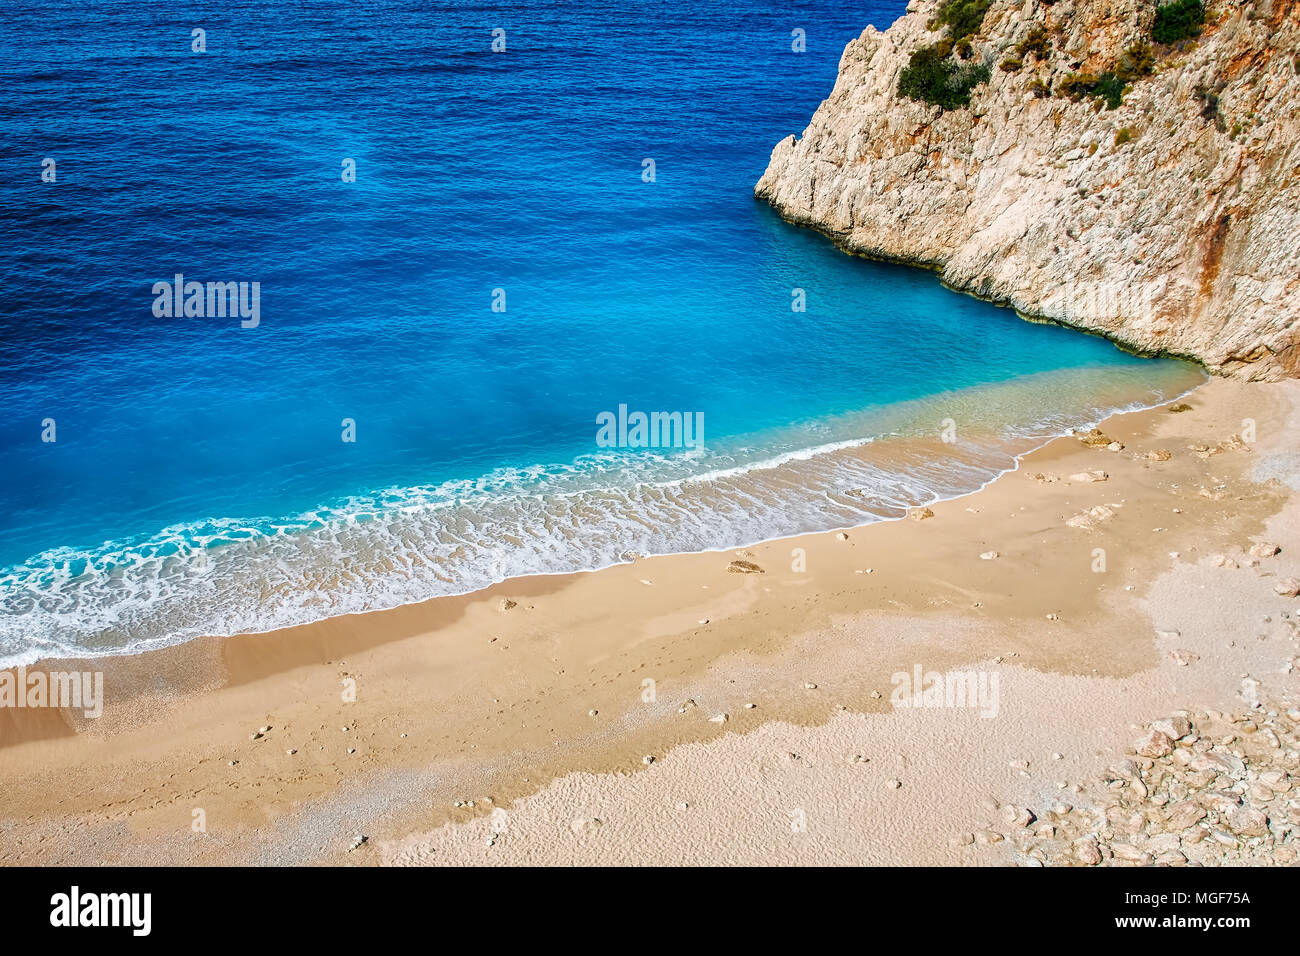 Top down view of Kaputas beach in Kalkan, Antalya, Turkey Stock Photo